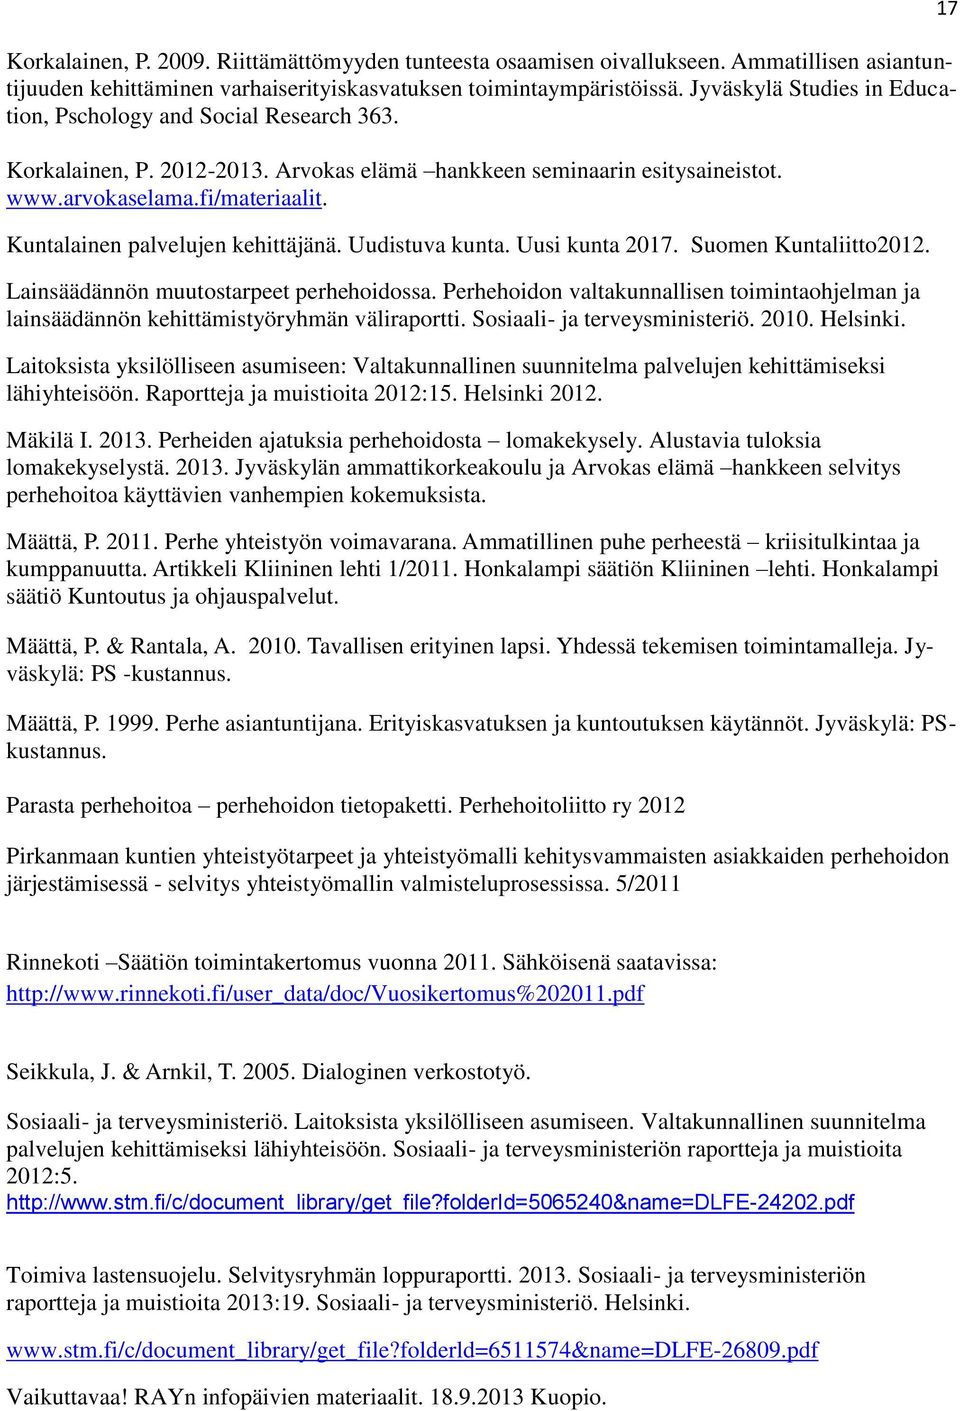 Kuntalainen palvelujen kehittäjänä. Uudistuva kunta. Uusi kunta 2017. Suomen Kuntaliitto2012. Lainsäädännön muutostarpeet perhehoidossa.